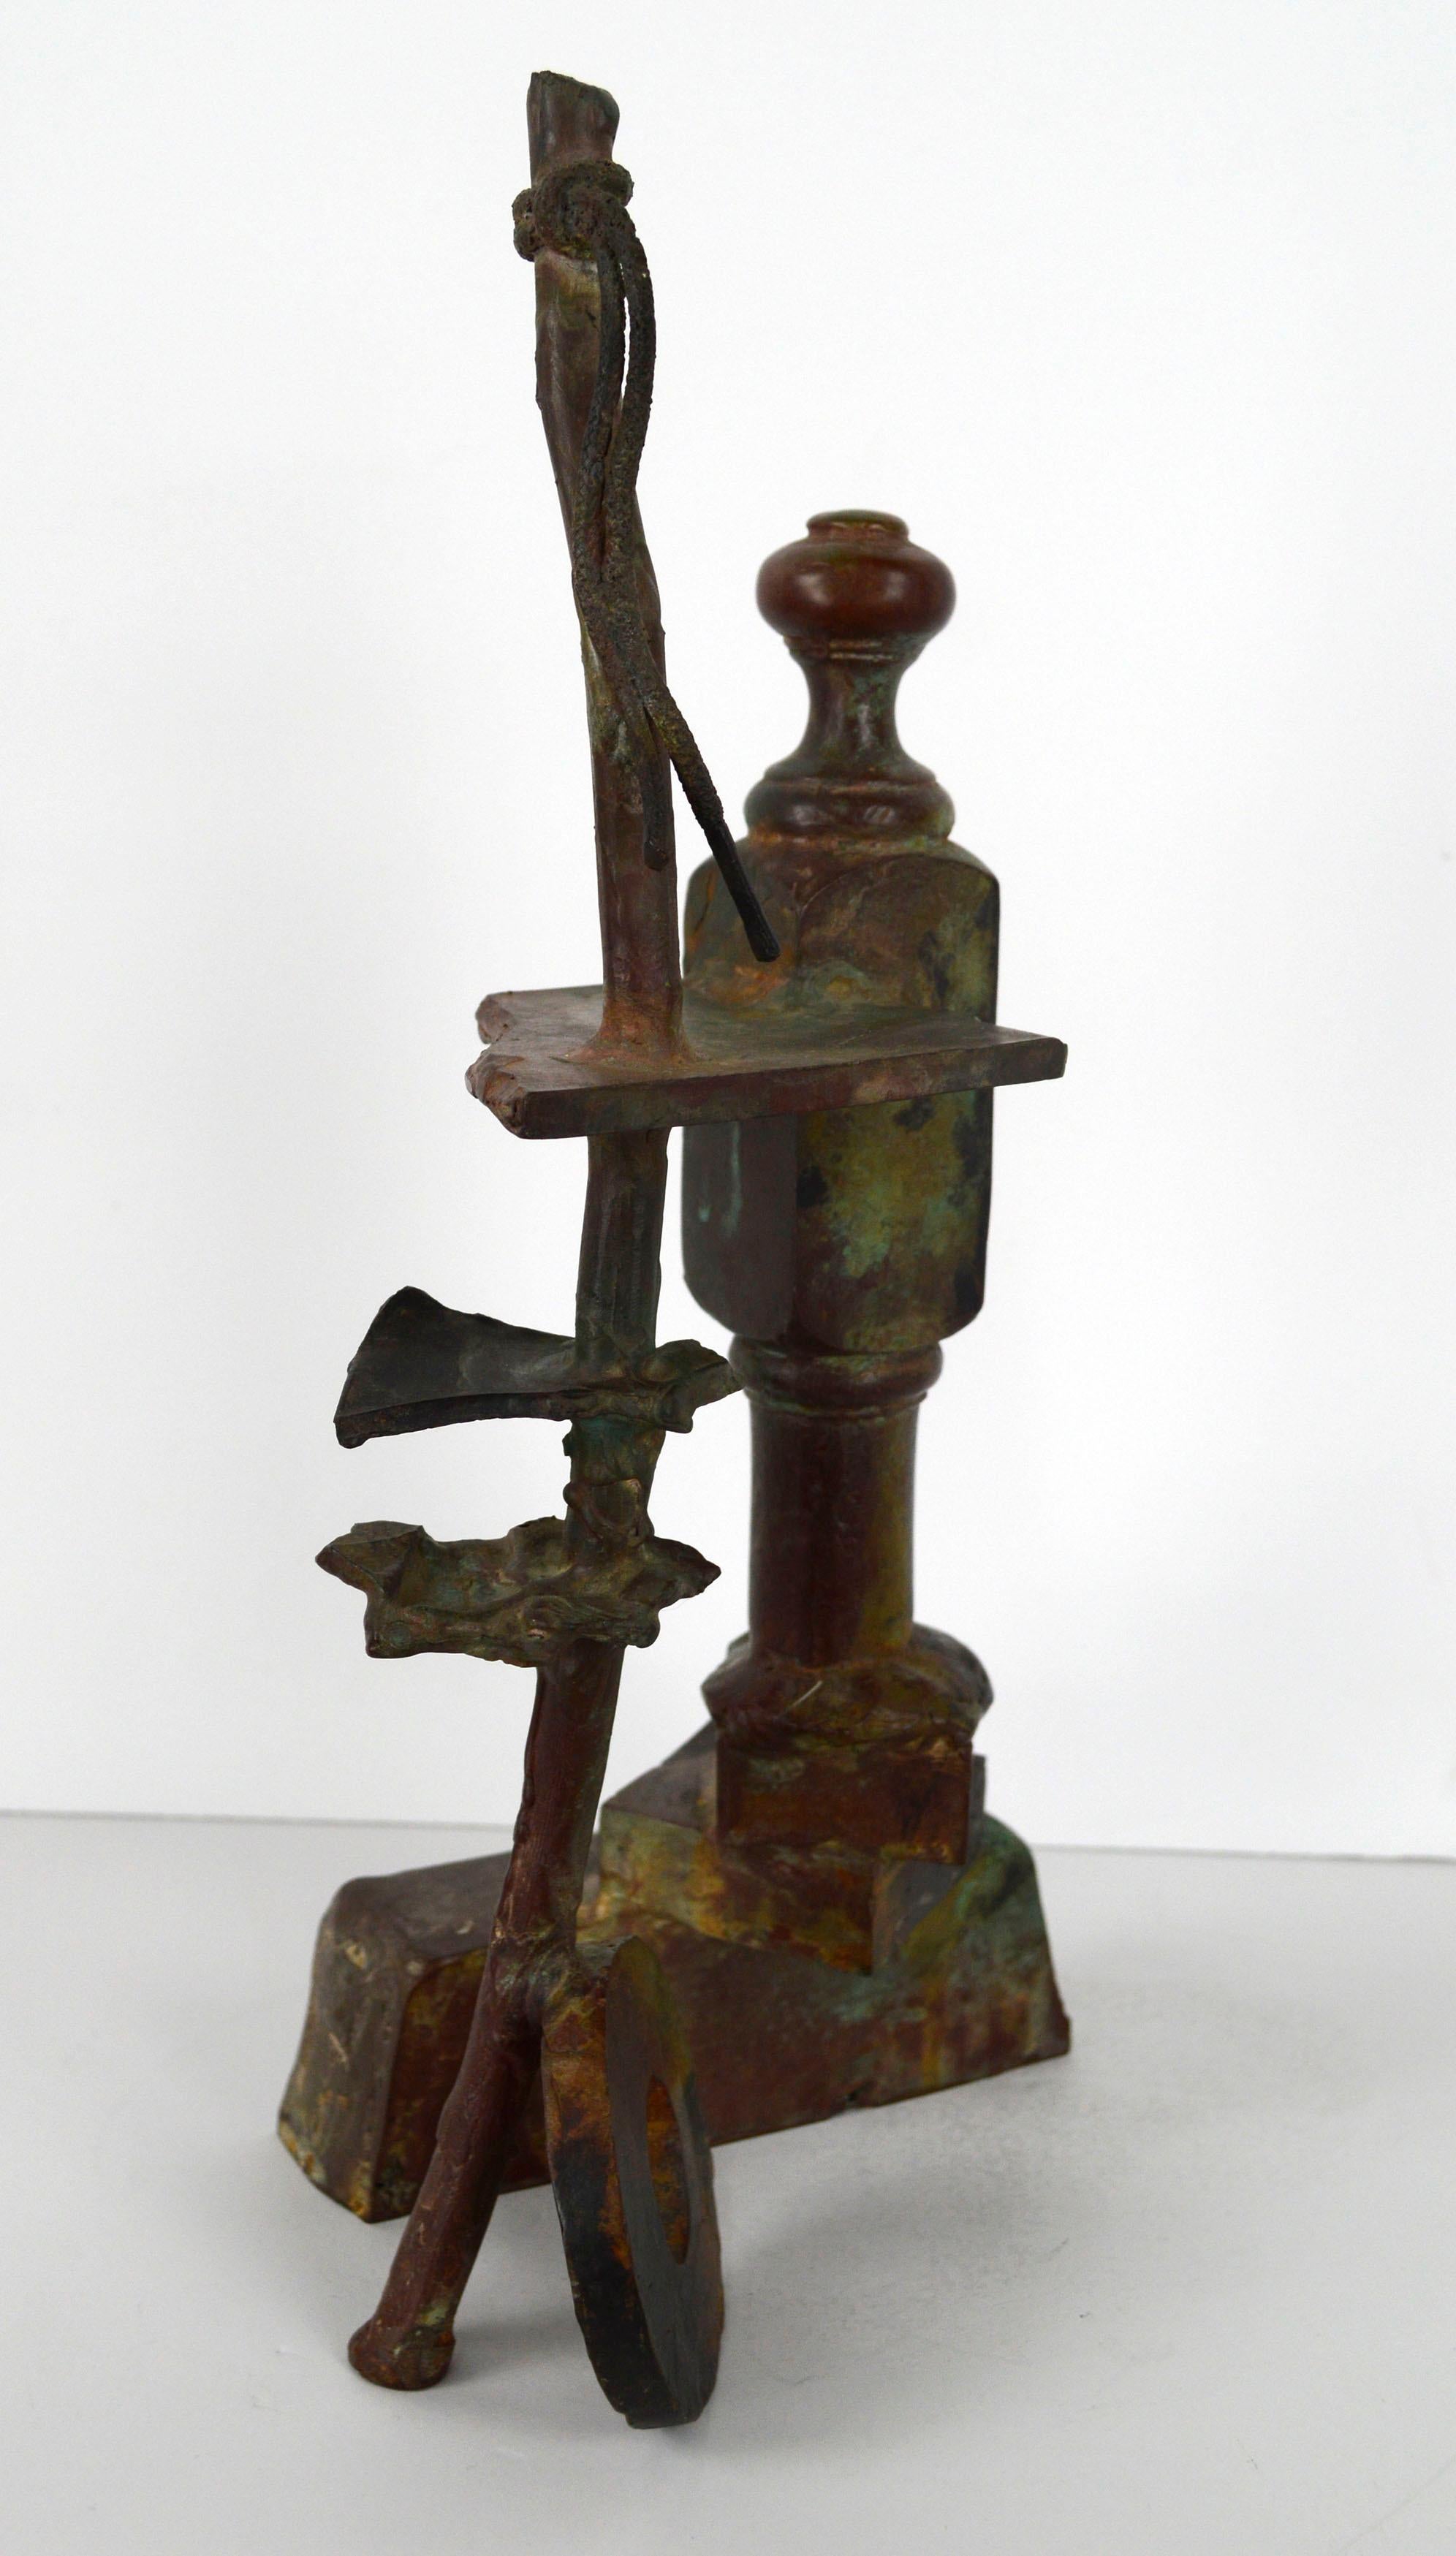 Impressionnante sculpture abstraite en bronze de l'artiste californien David Phelps (américain, né en 1956). Il s'agit d'une pièce unique et moderne qui fait référence aux temps passés en juxtaposant plusieurs éléments anciens, comme une corde, des